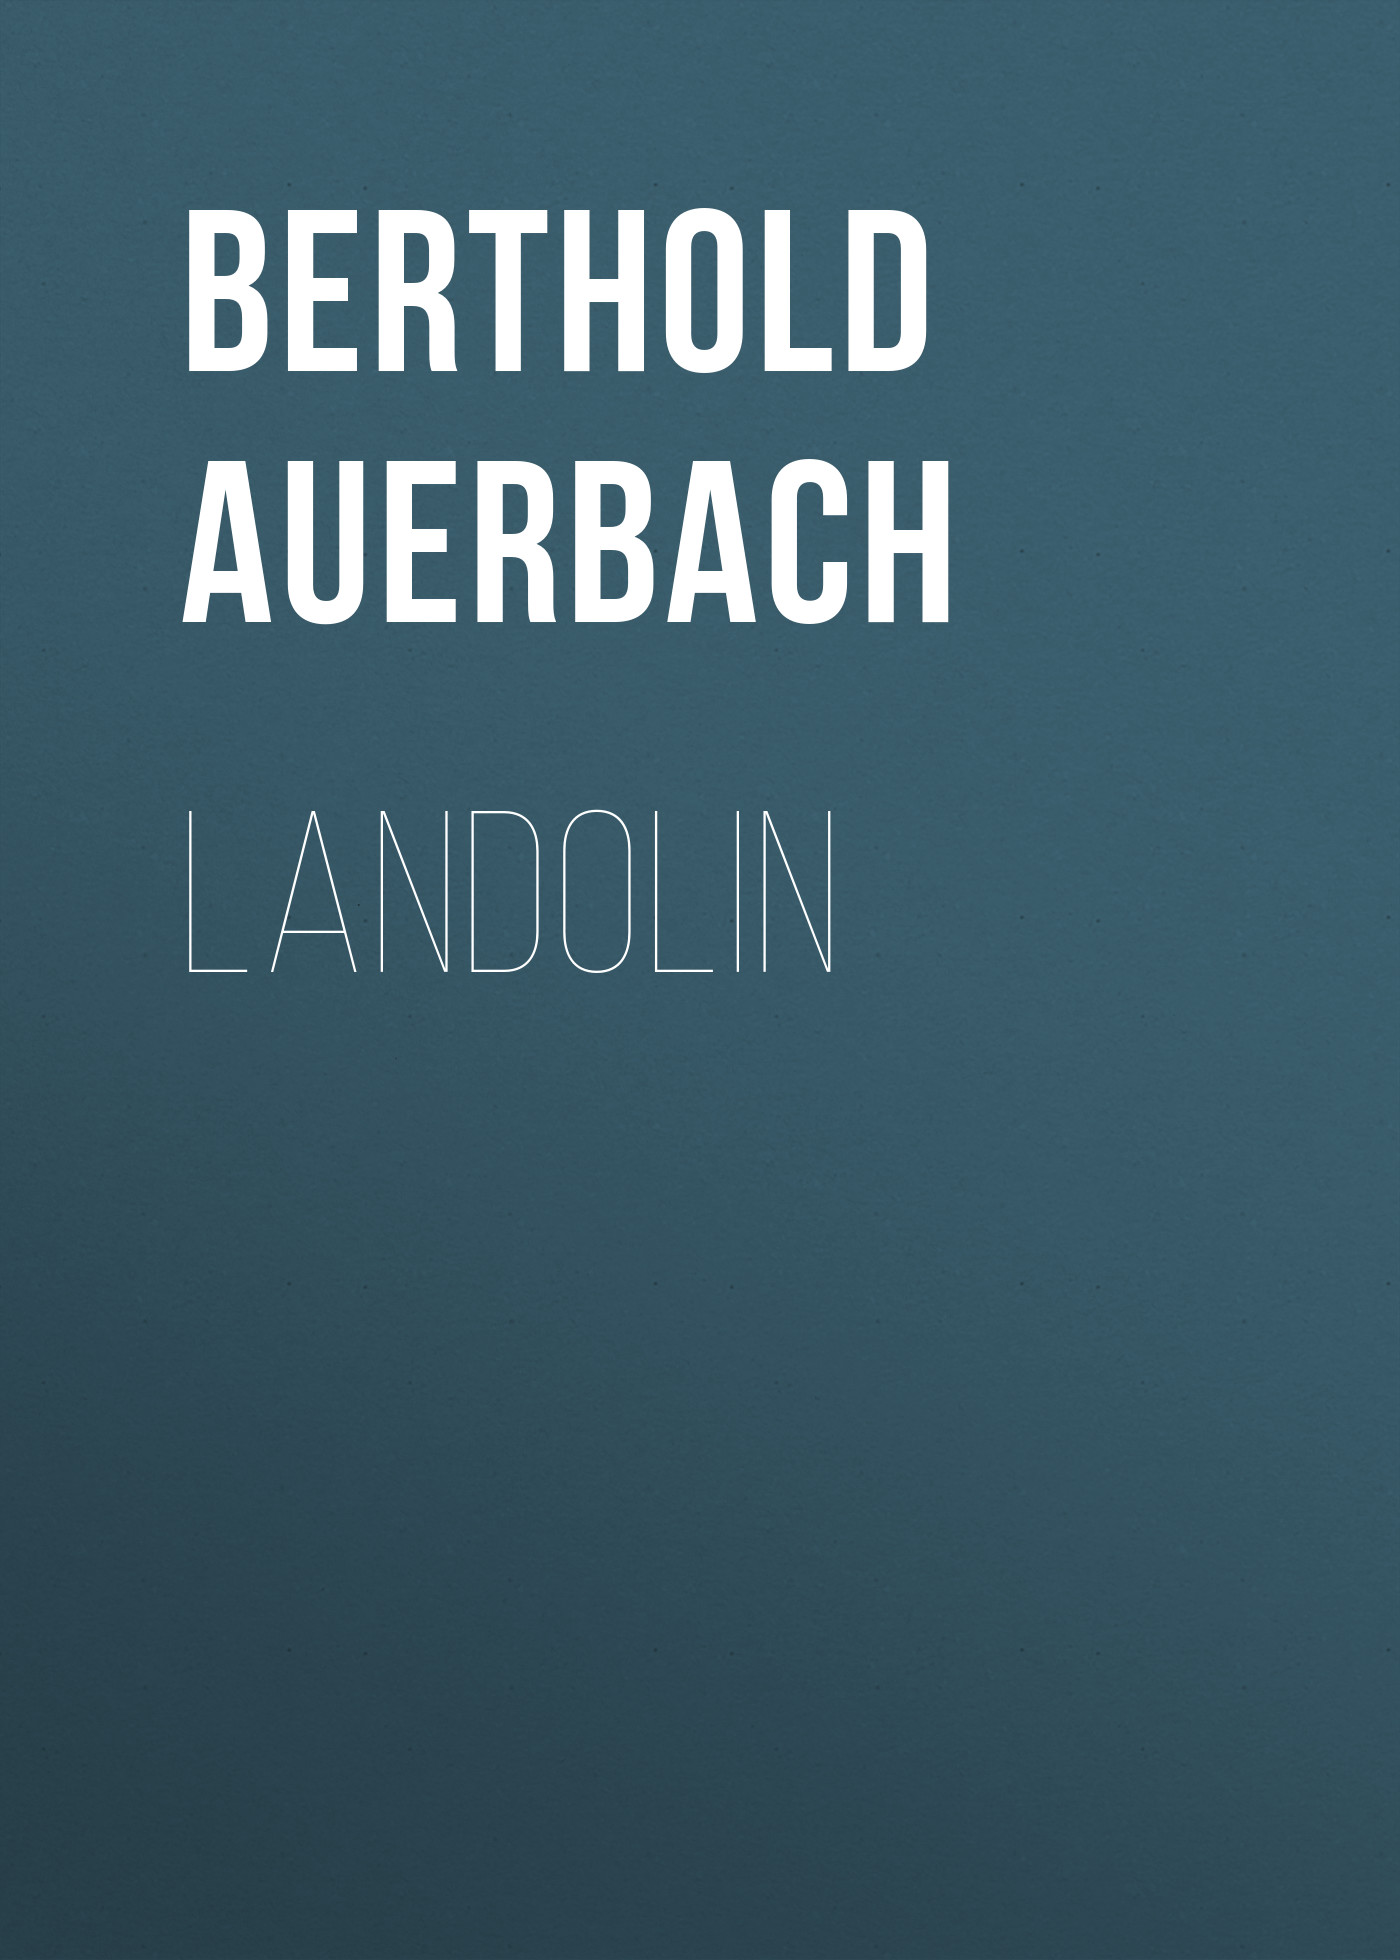 Книга Landolin из серии , созданная Berthold Auerbach, может относится к жанру Зарубежная старинная литература, Зарубежная классика. Стоимость электронной книги Landolin с идентификатором 24174316 составляет 0.90 руб.